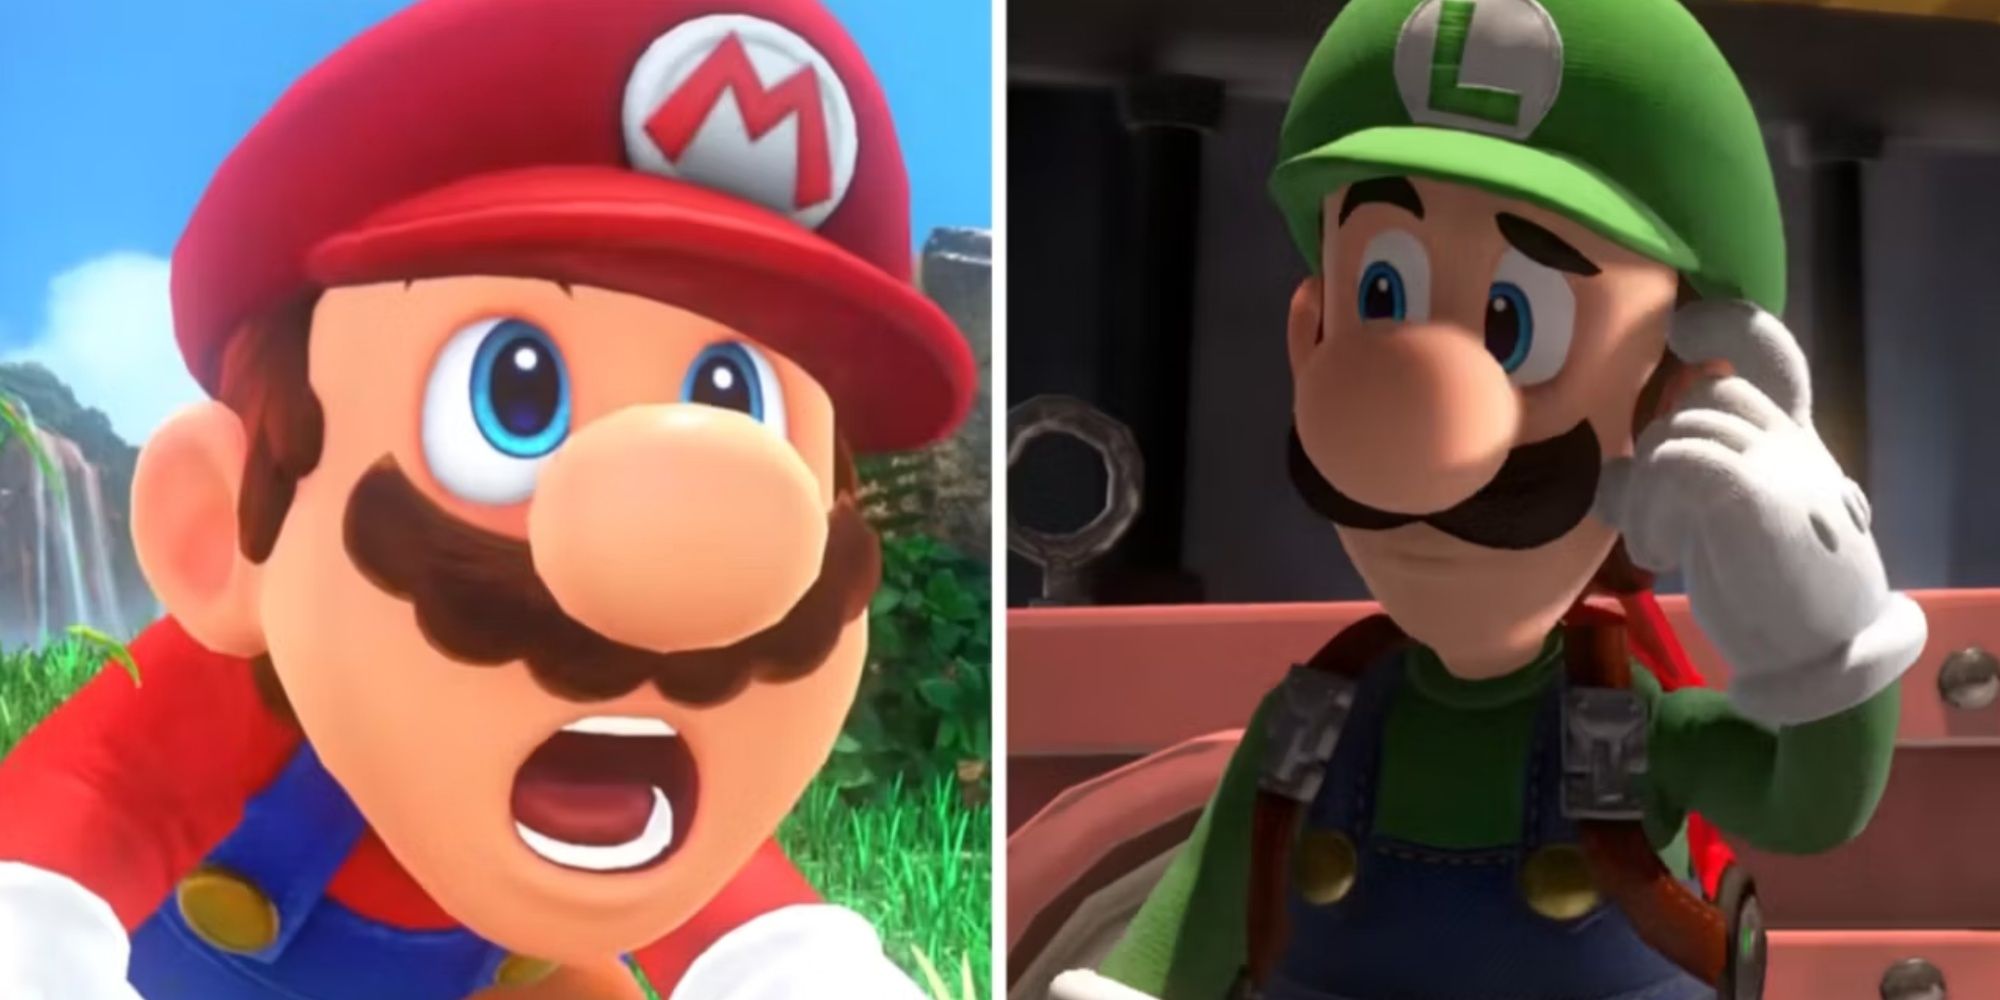 Split images of Mario and Luigi